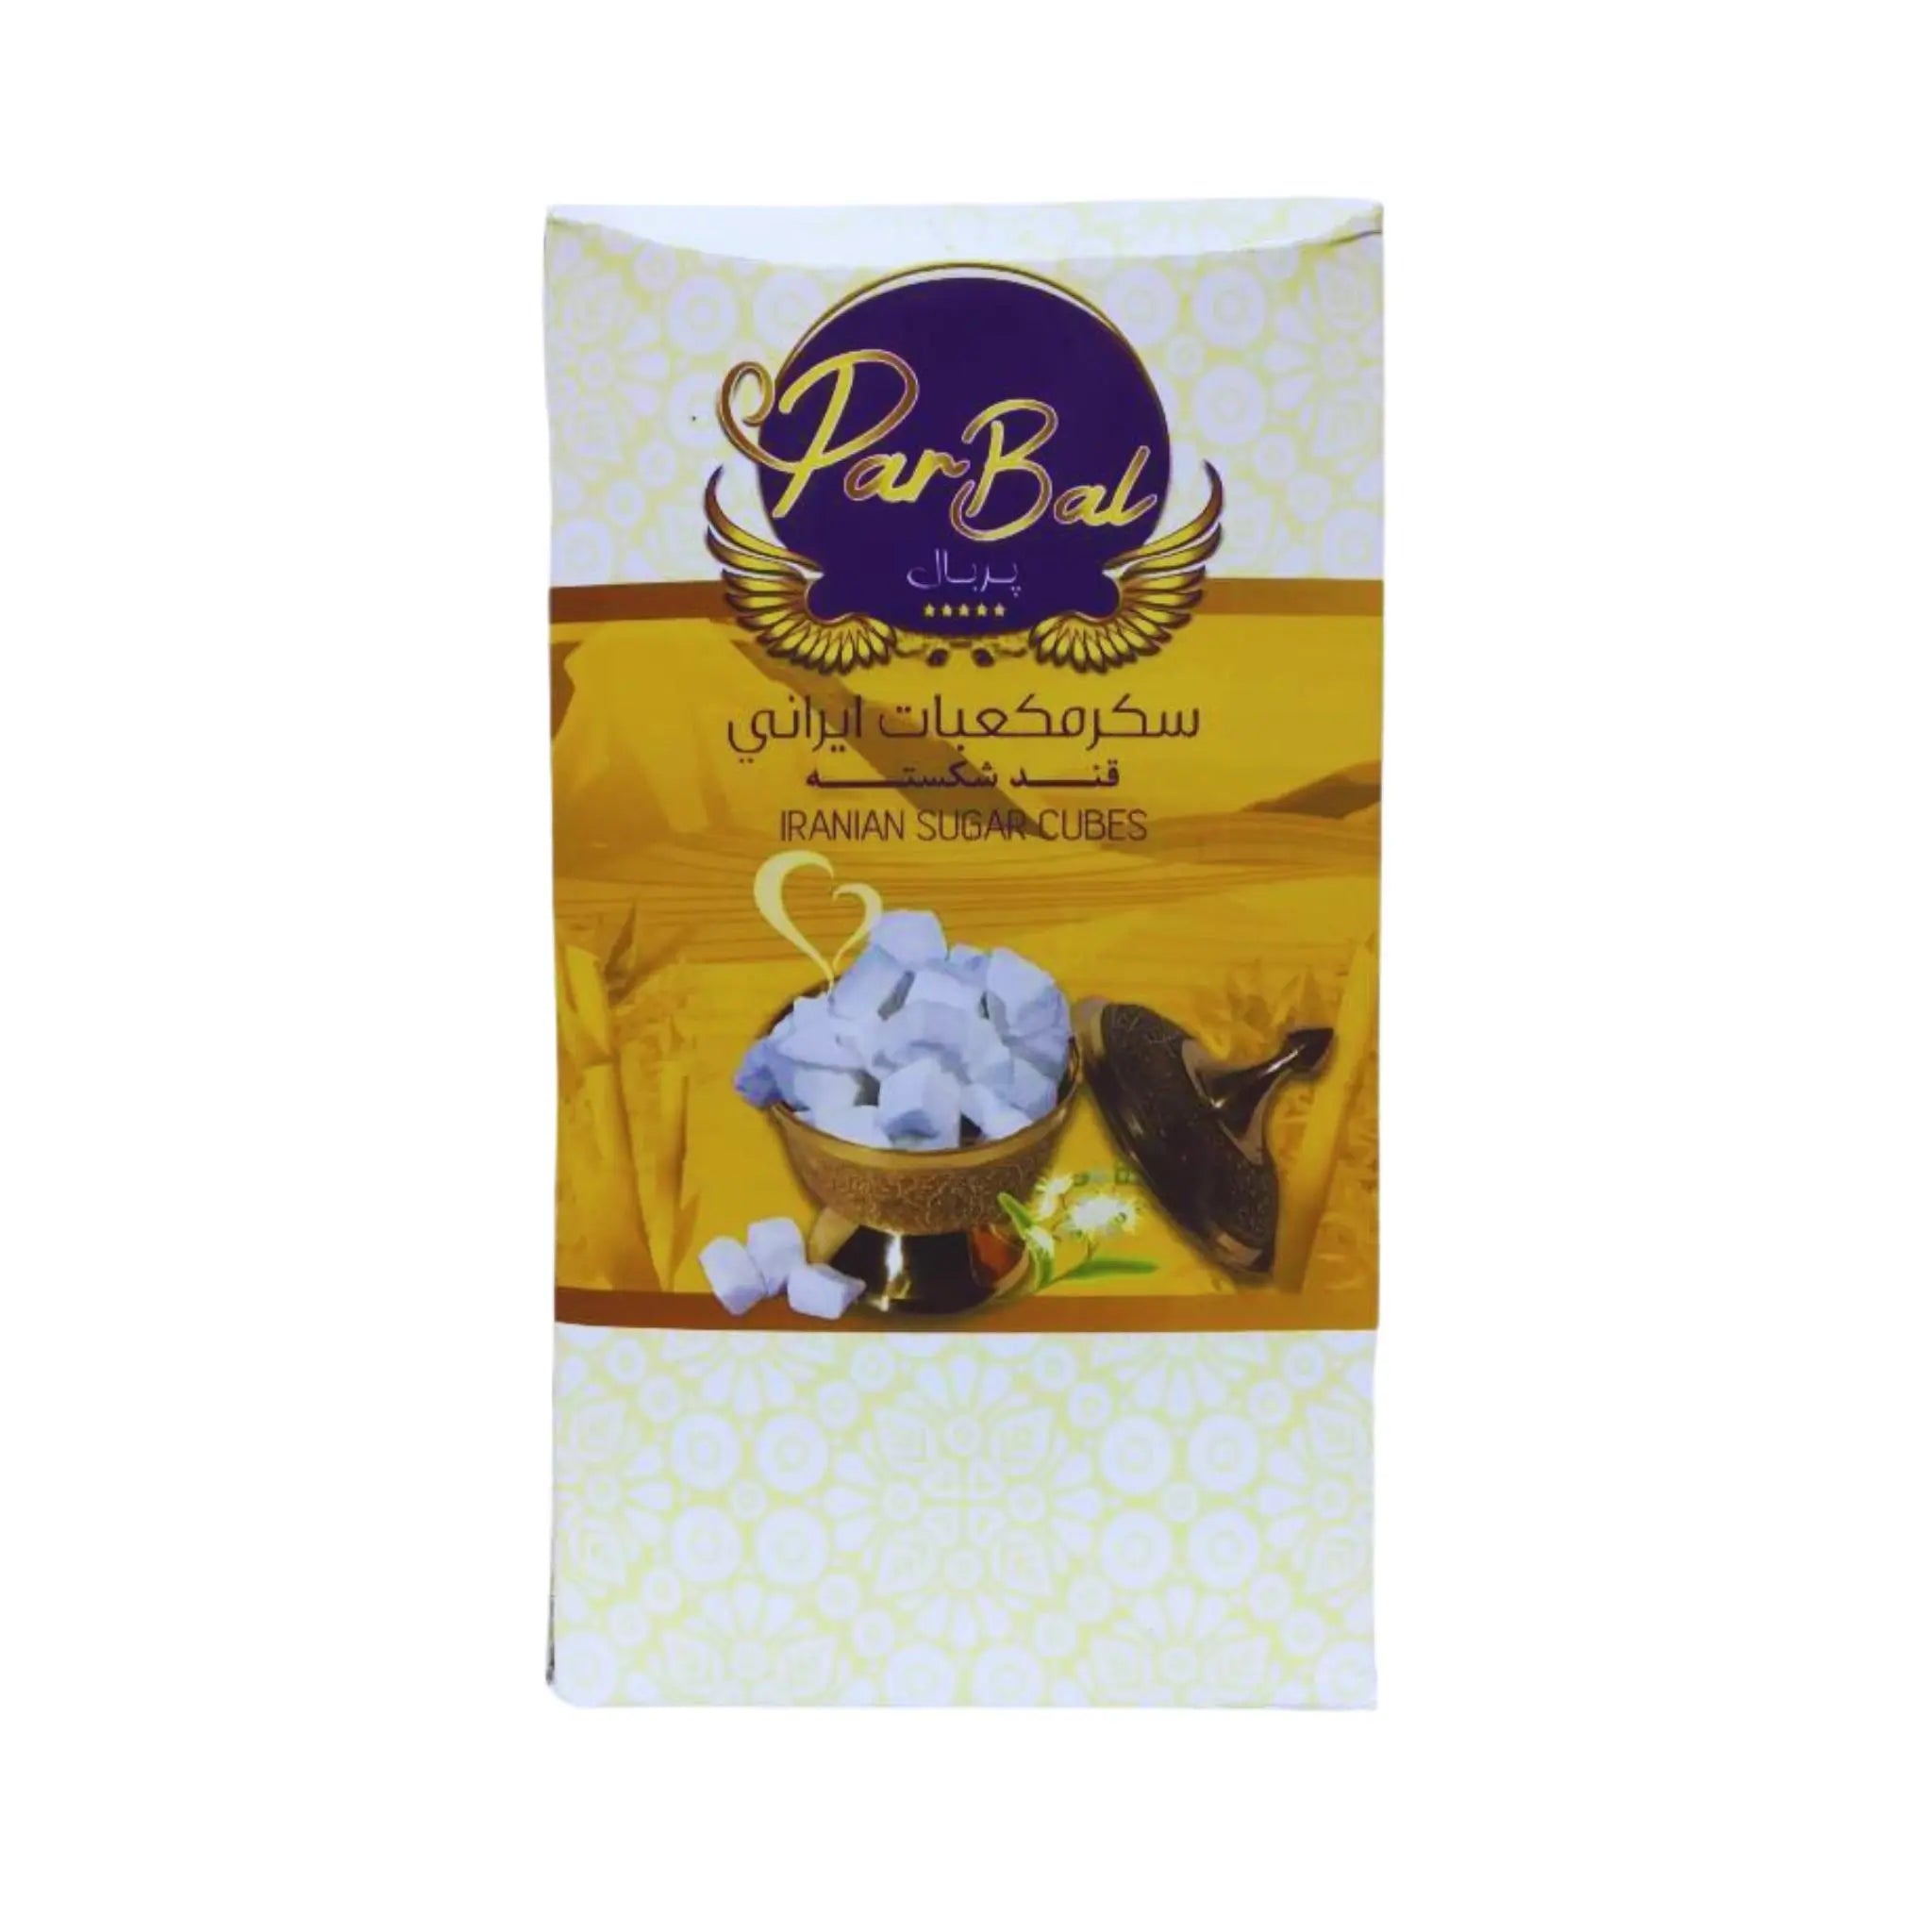 ParBal Iranian Sugar Cubes - 700gx12 (1 carton) Marino.AE